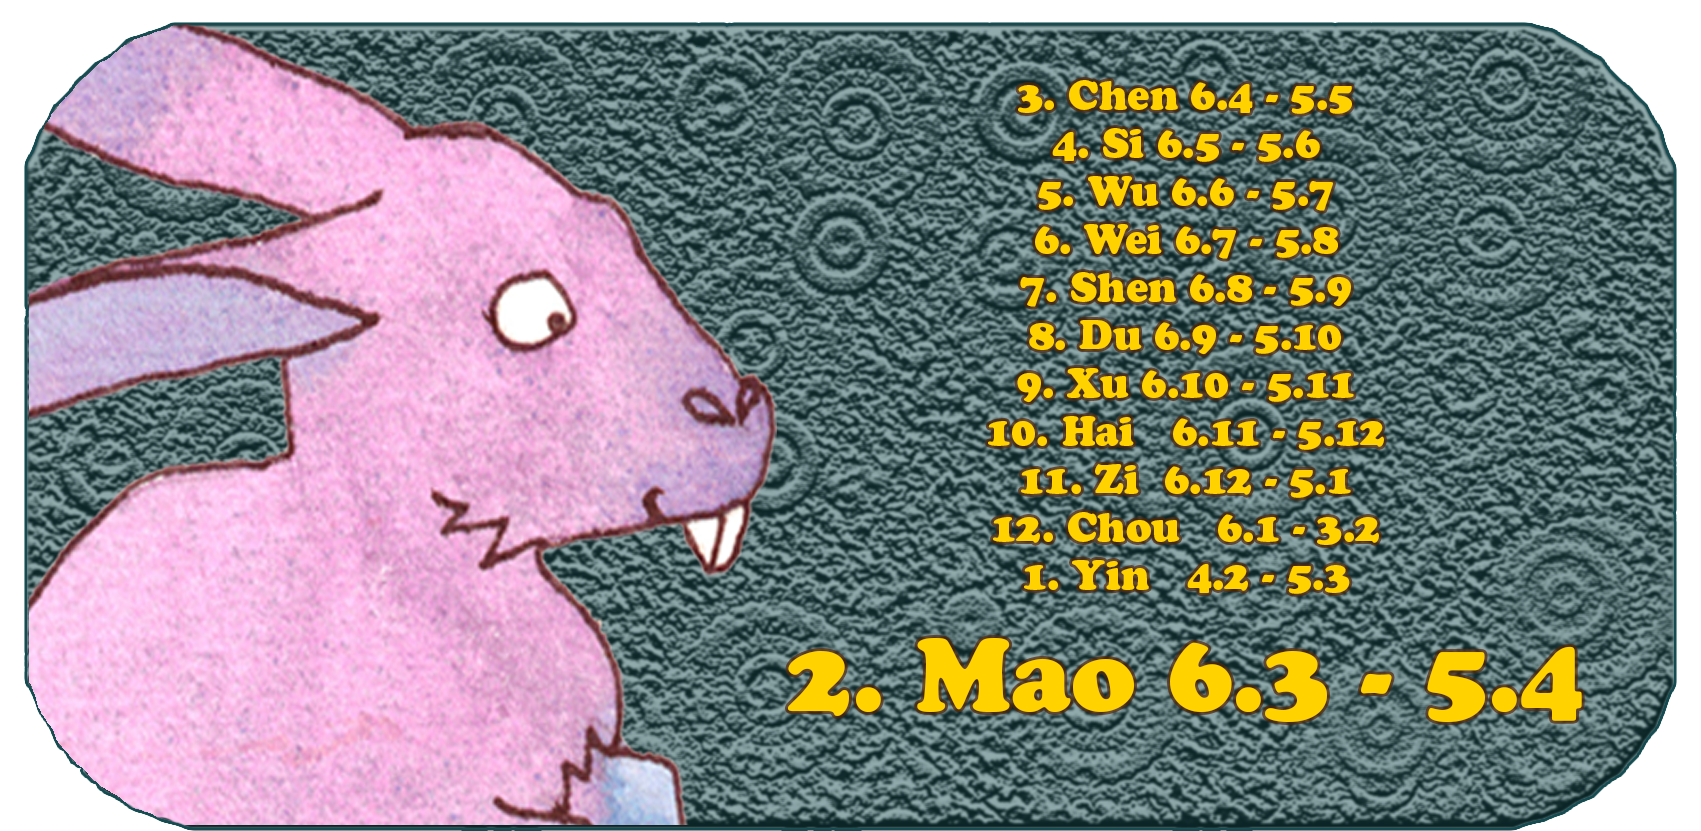 Kiinalainen horoskooppi | Kaksitoista kiinalaista eläintä | Kani, maaliskuu, kuukausi 2, Mao